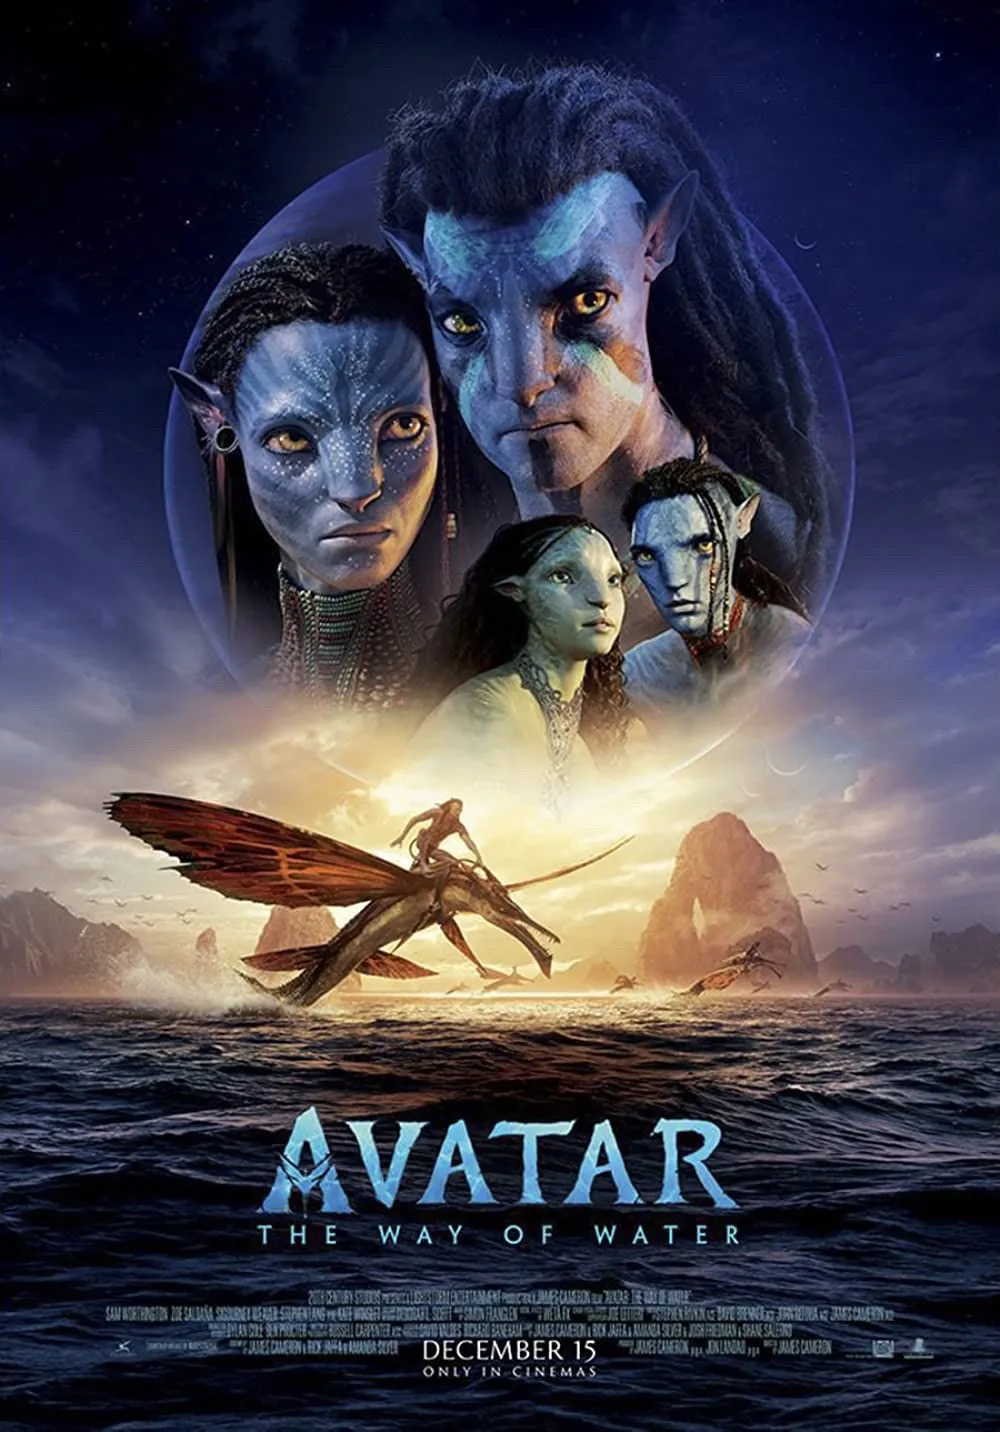 de688588 f15c 4b30 abc6 5cb528c18f5a 98872 00001b1278e3b2cf file Avatar 2 se torna o 6º filme na história a passar a marca de US$2 bilhões em bilheteria.